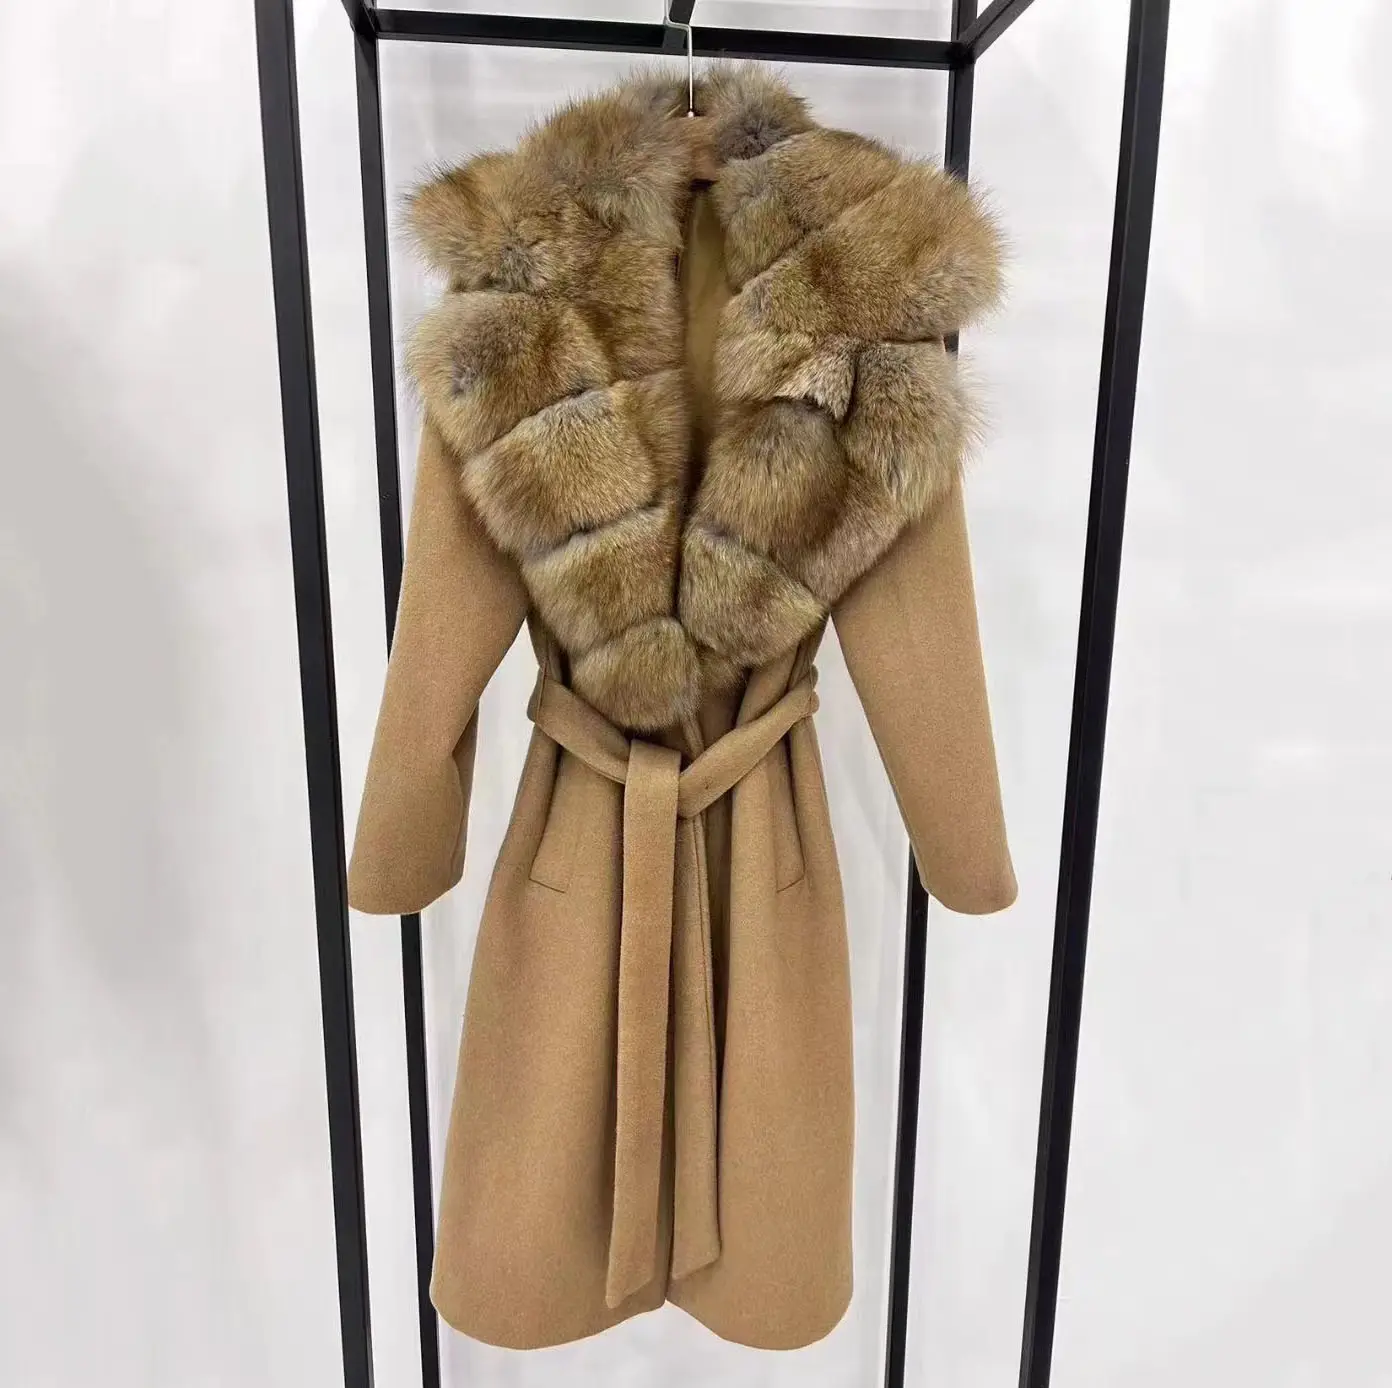 उच्च अंत शानदार परिधान बड़े रियल फॉक्स फर कॉलर ऊन कोट सर्दियों परिधान लंबी बज सर्दियों महिलाओं कोट